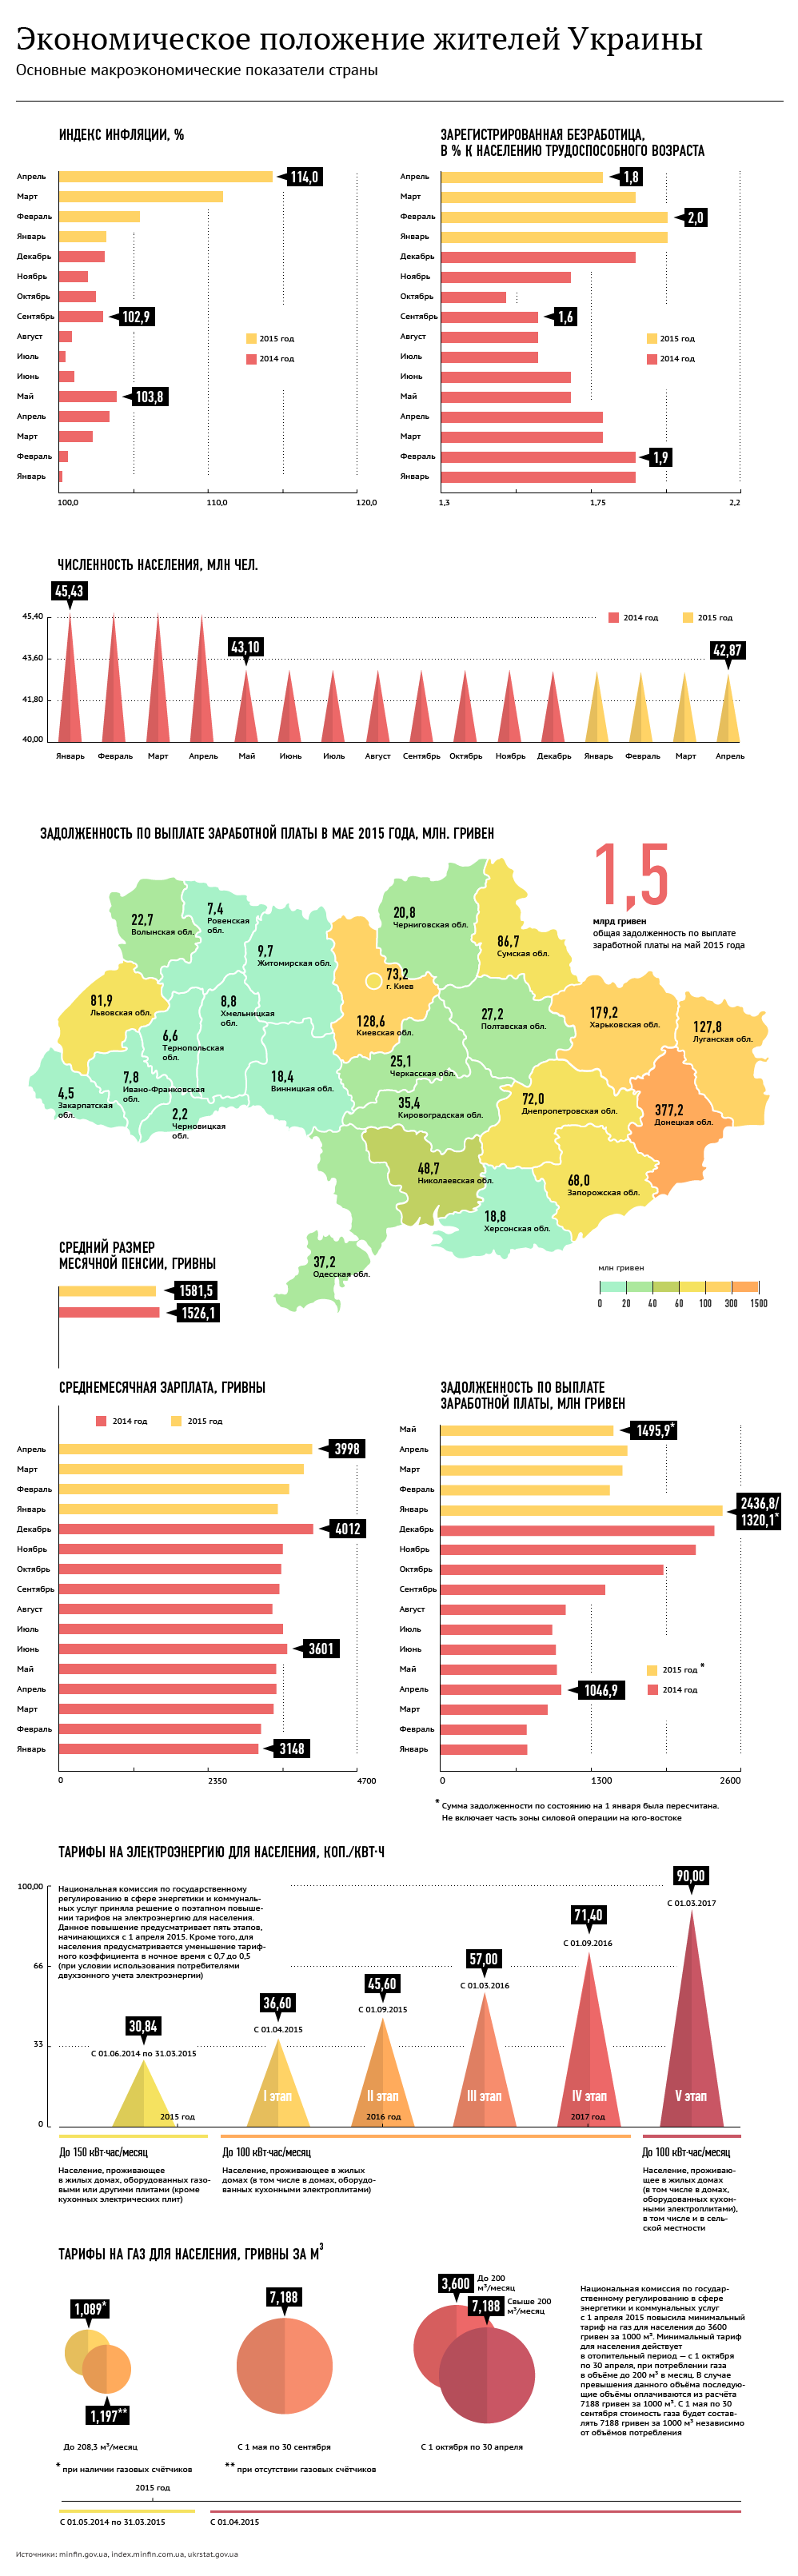 Экономика Украины при Порошенко